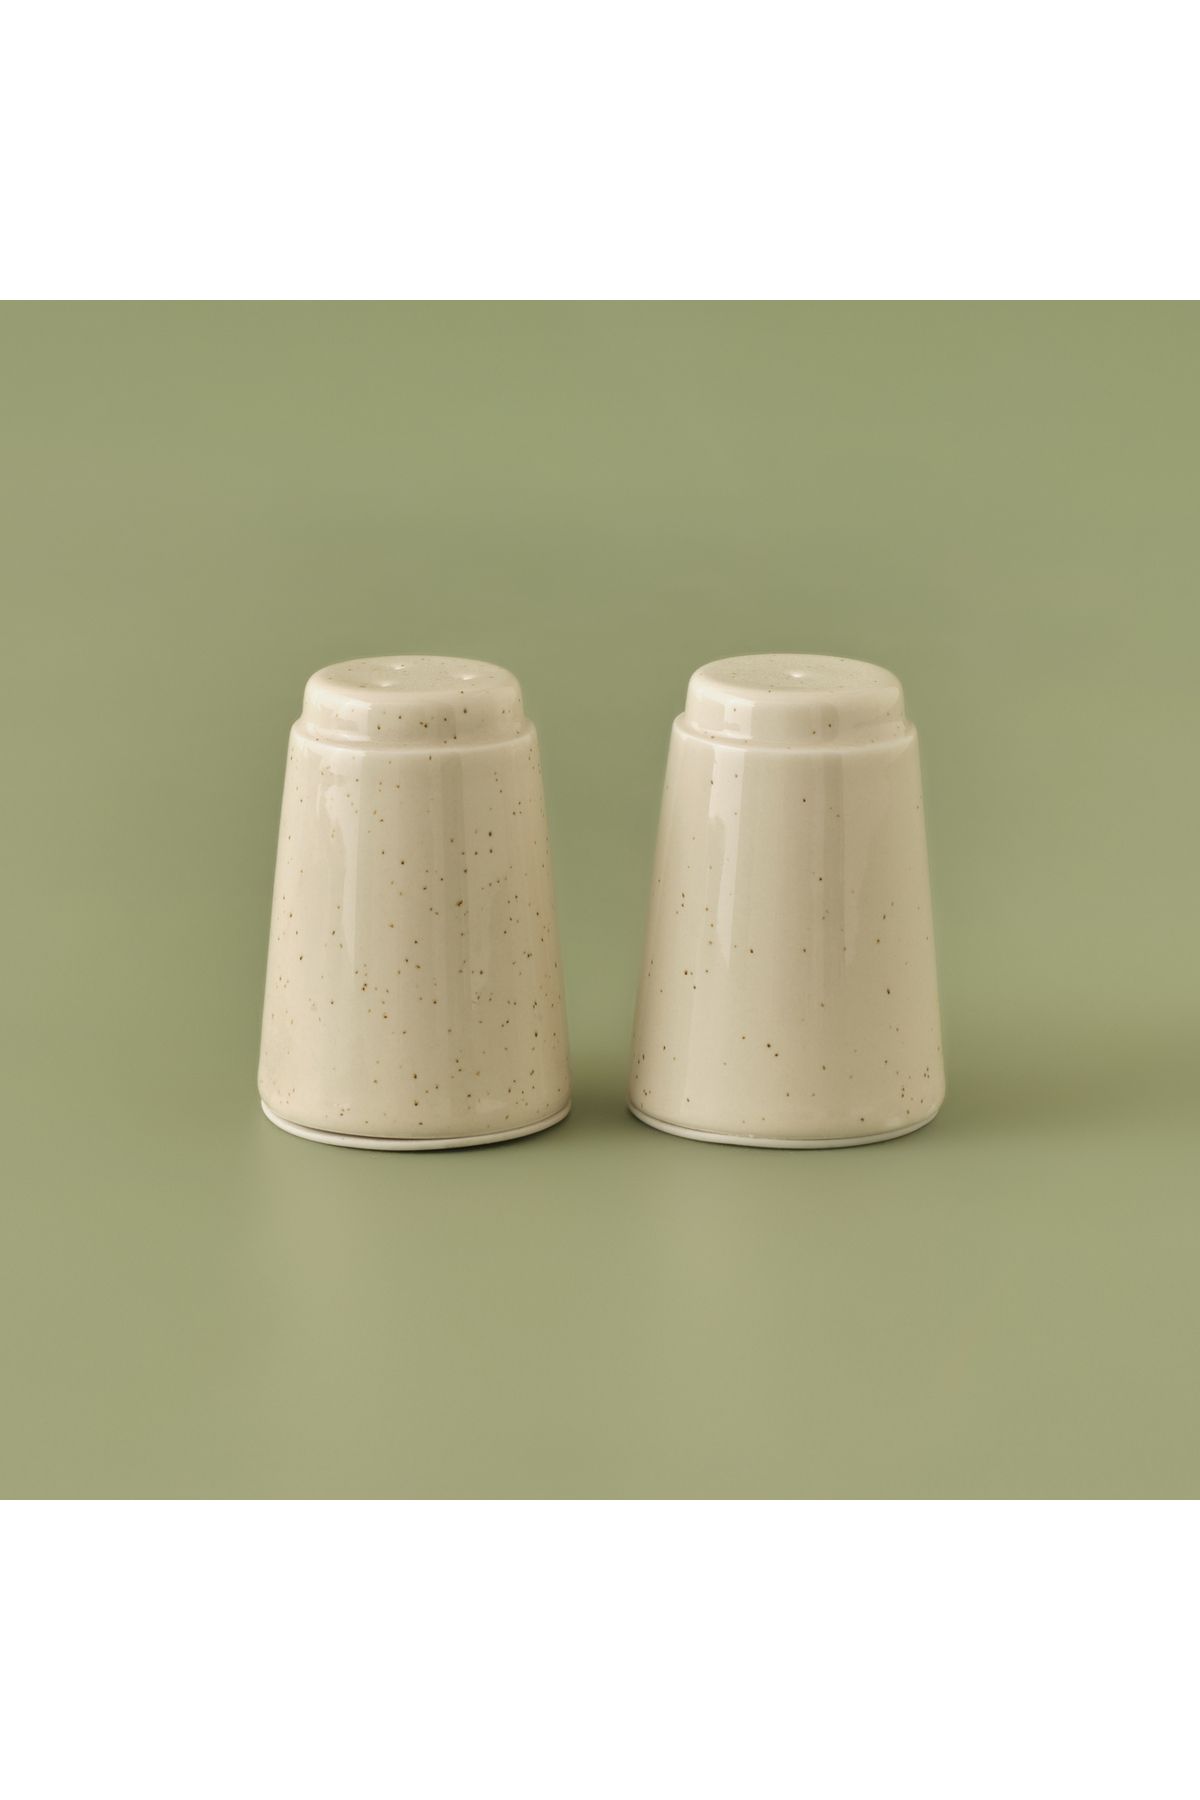 Bella Maison Sand Porselen Tuzluk-Biberlik Krem (7 cm)